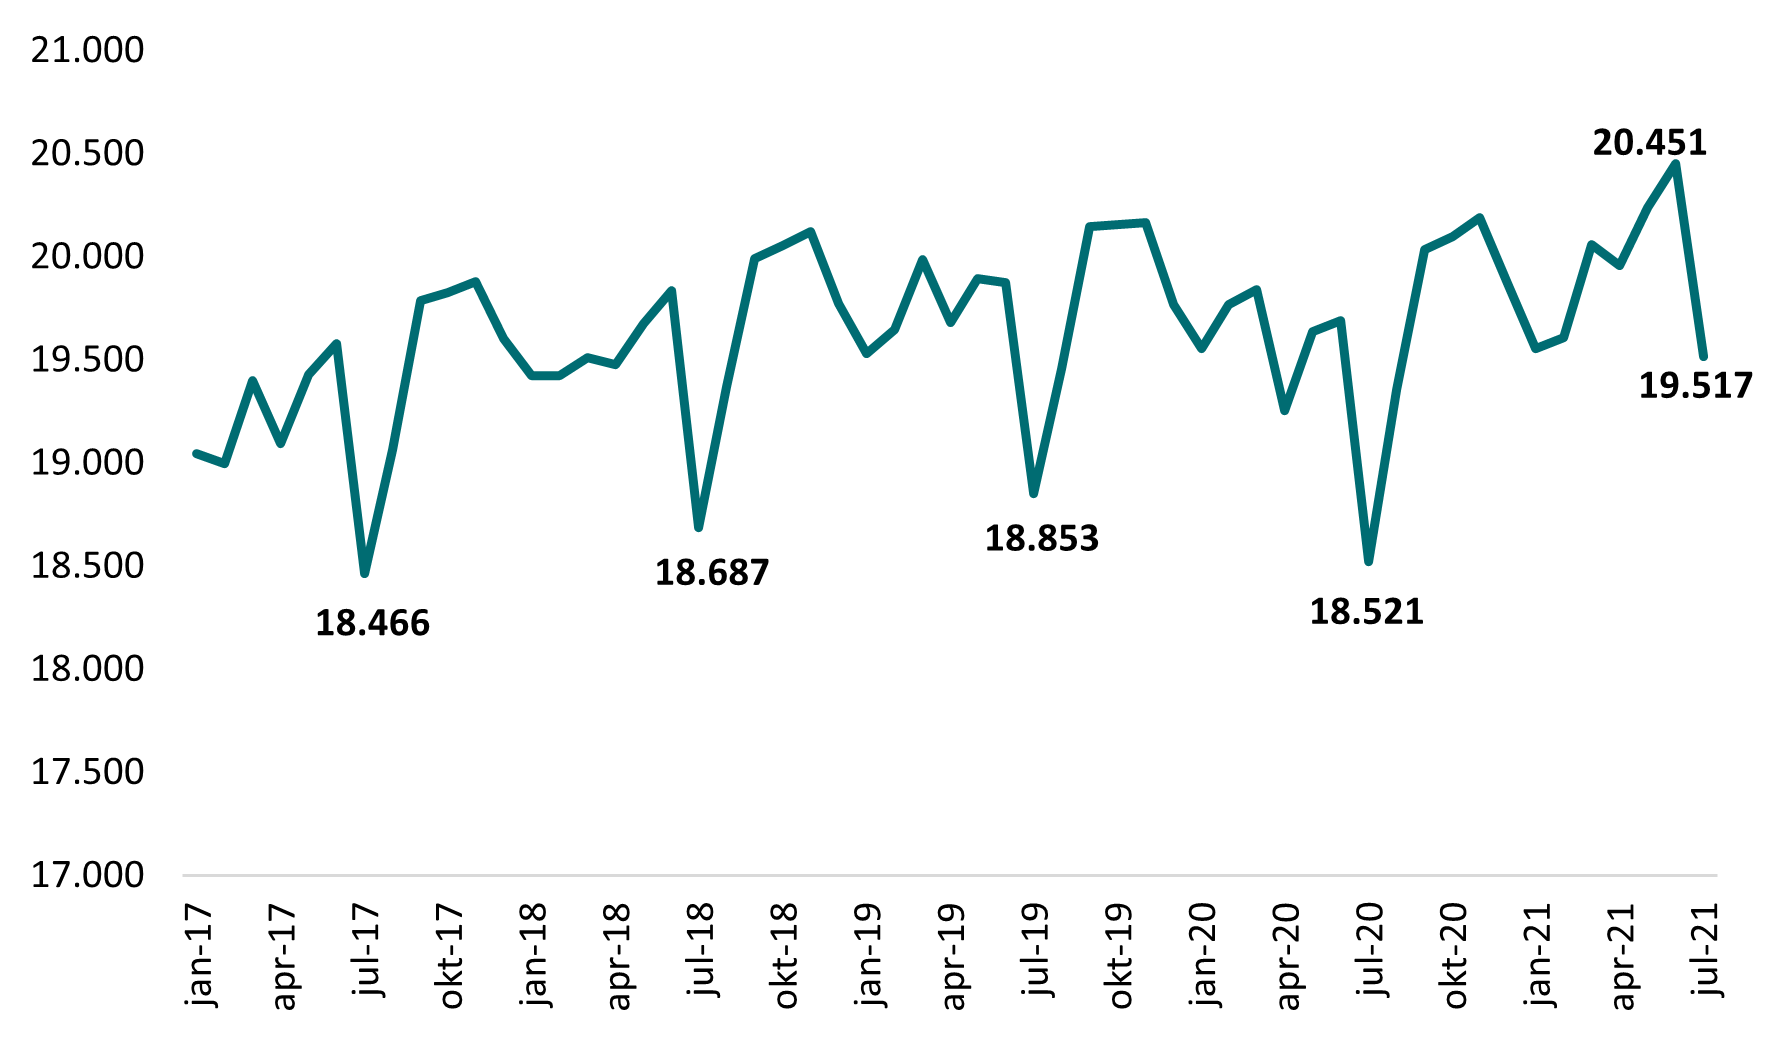 Figur 1: Antal fuldtidsbeskæftigede lønmodtagere i Favrskov Kommune januar 2017 – juli 2021